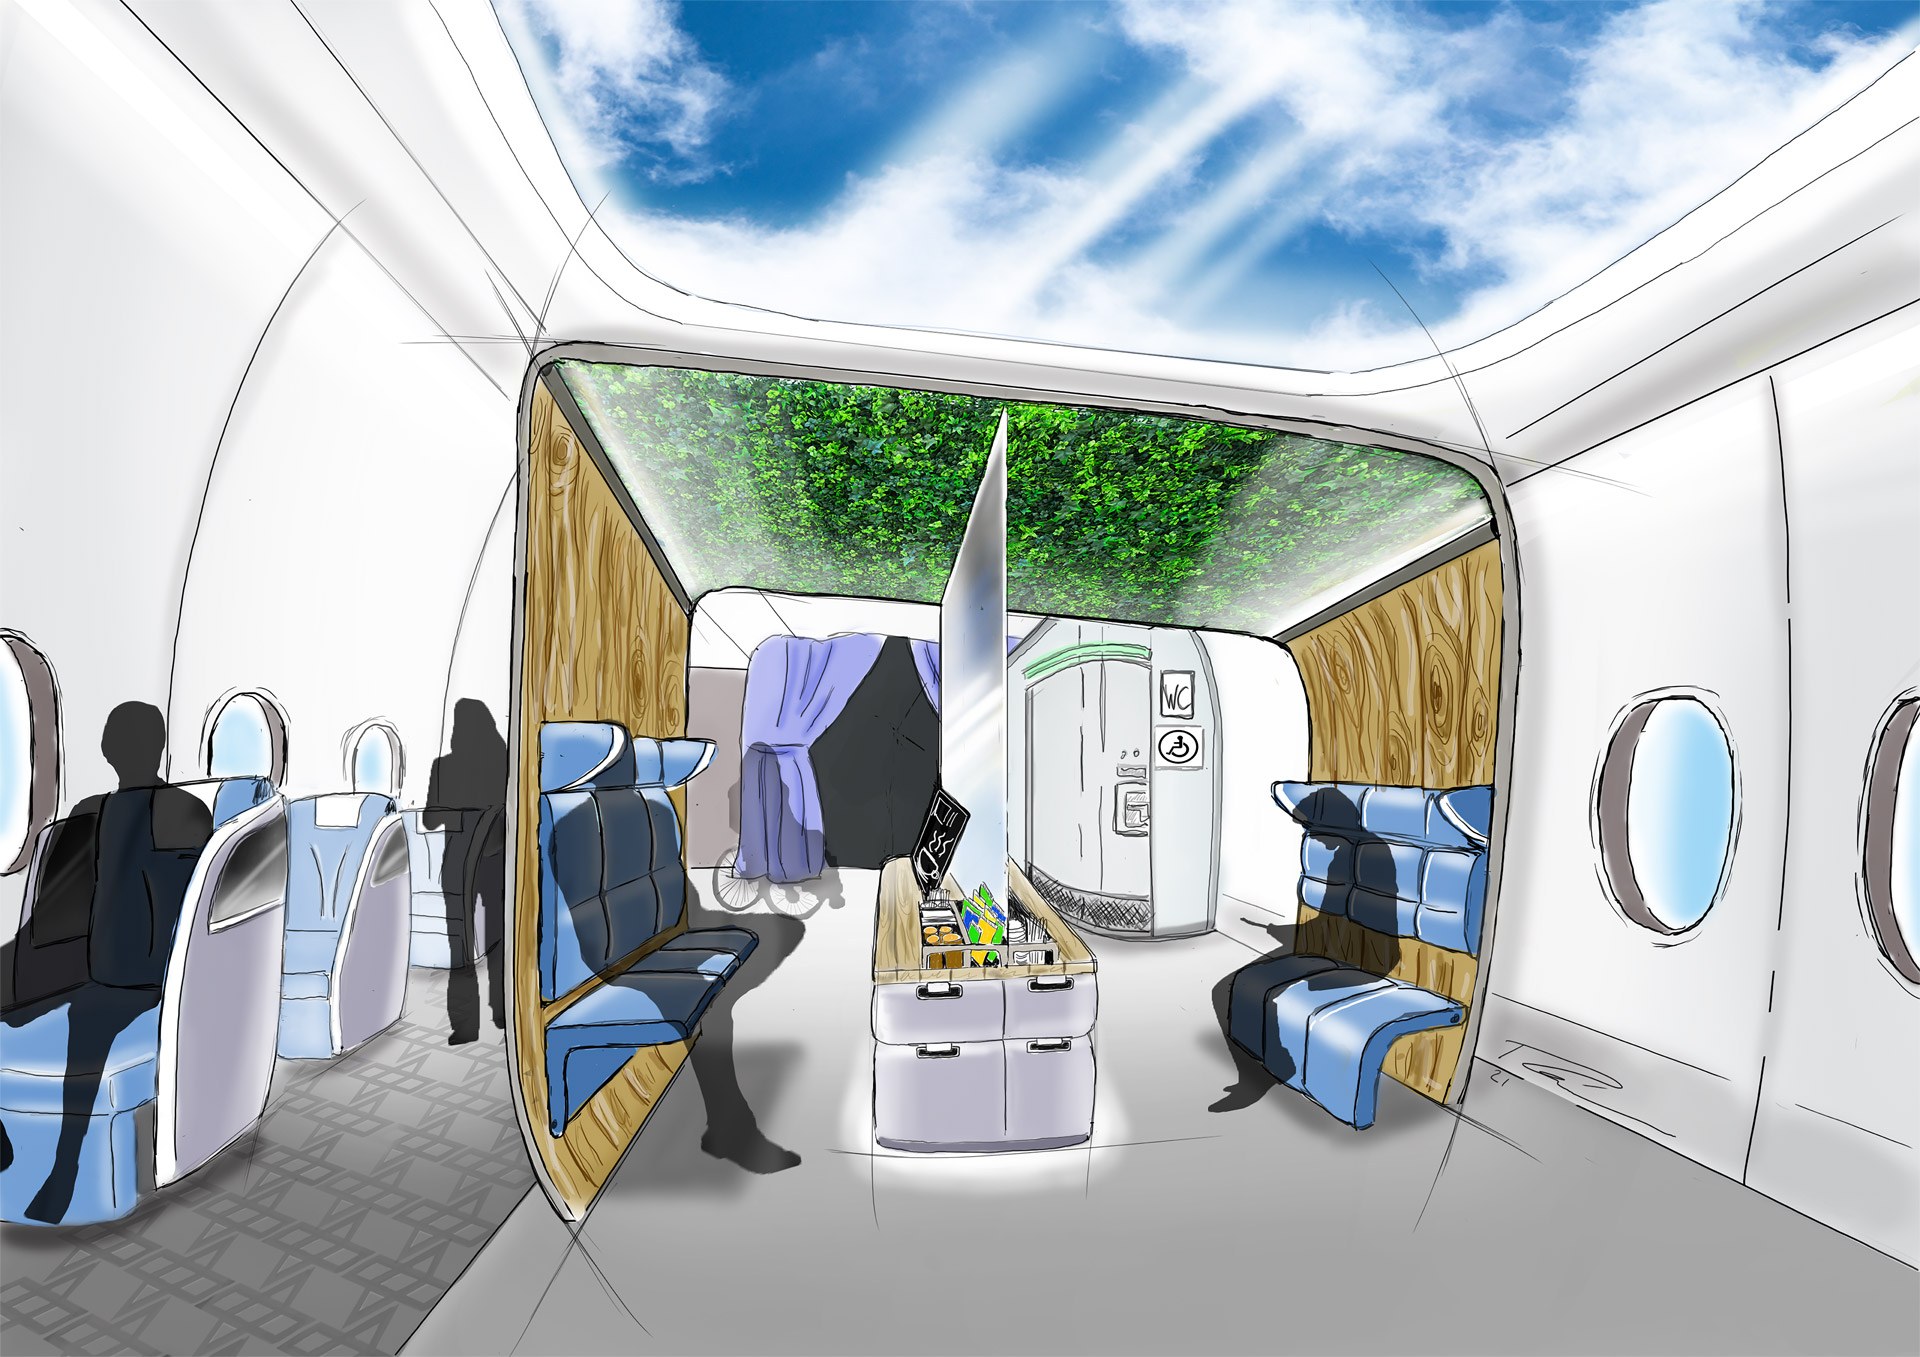 New concept for a modular aircraft cabin